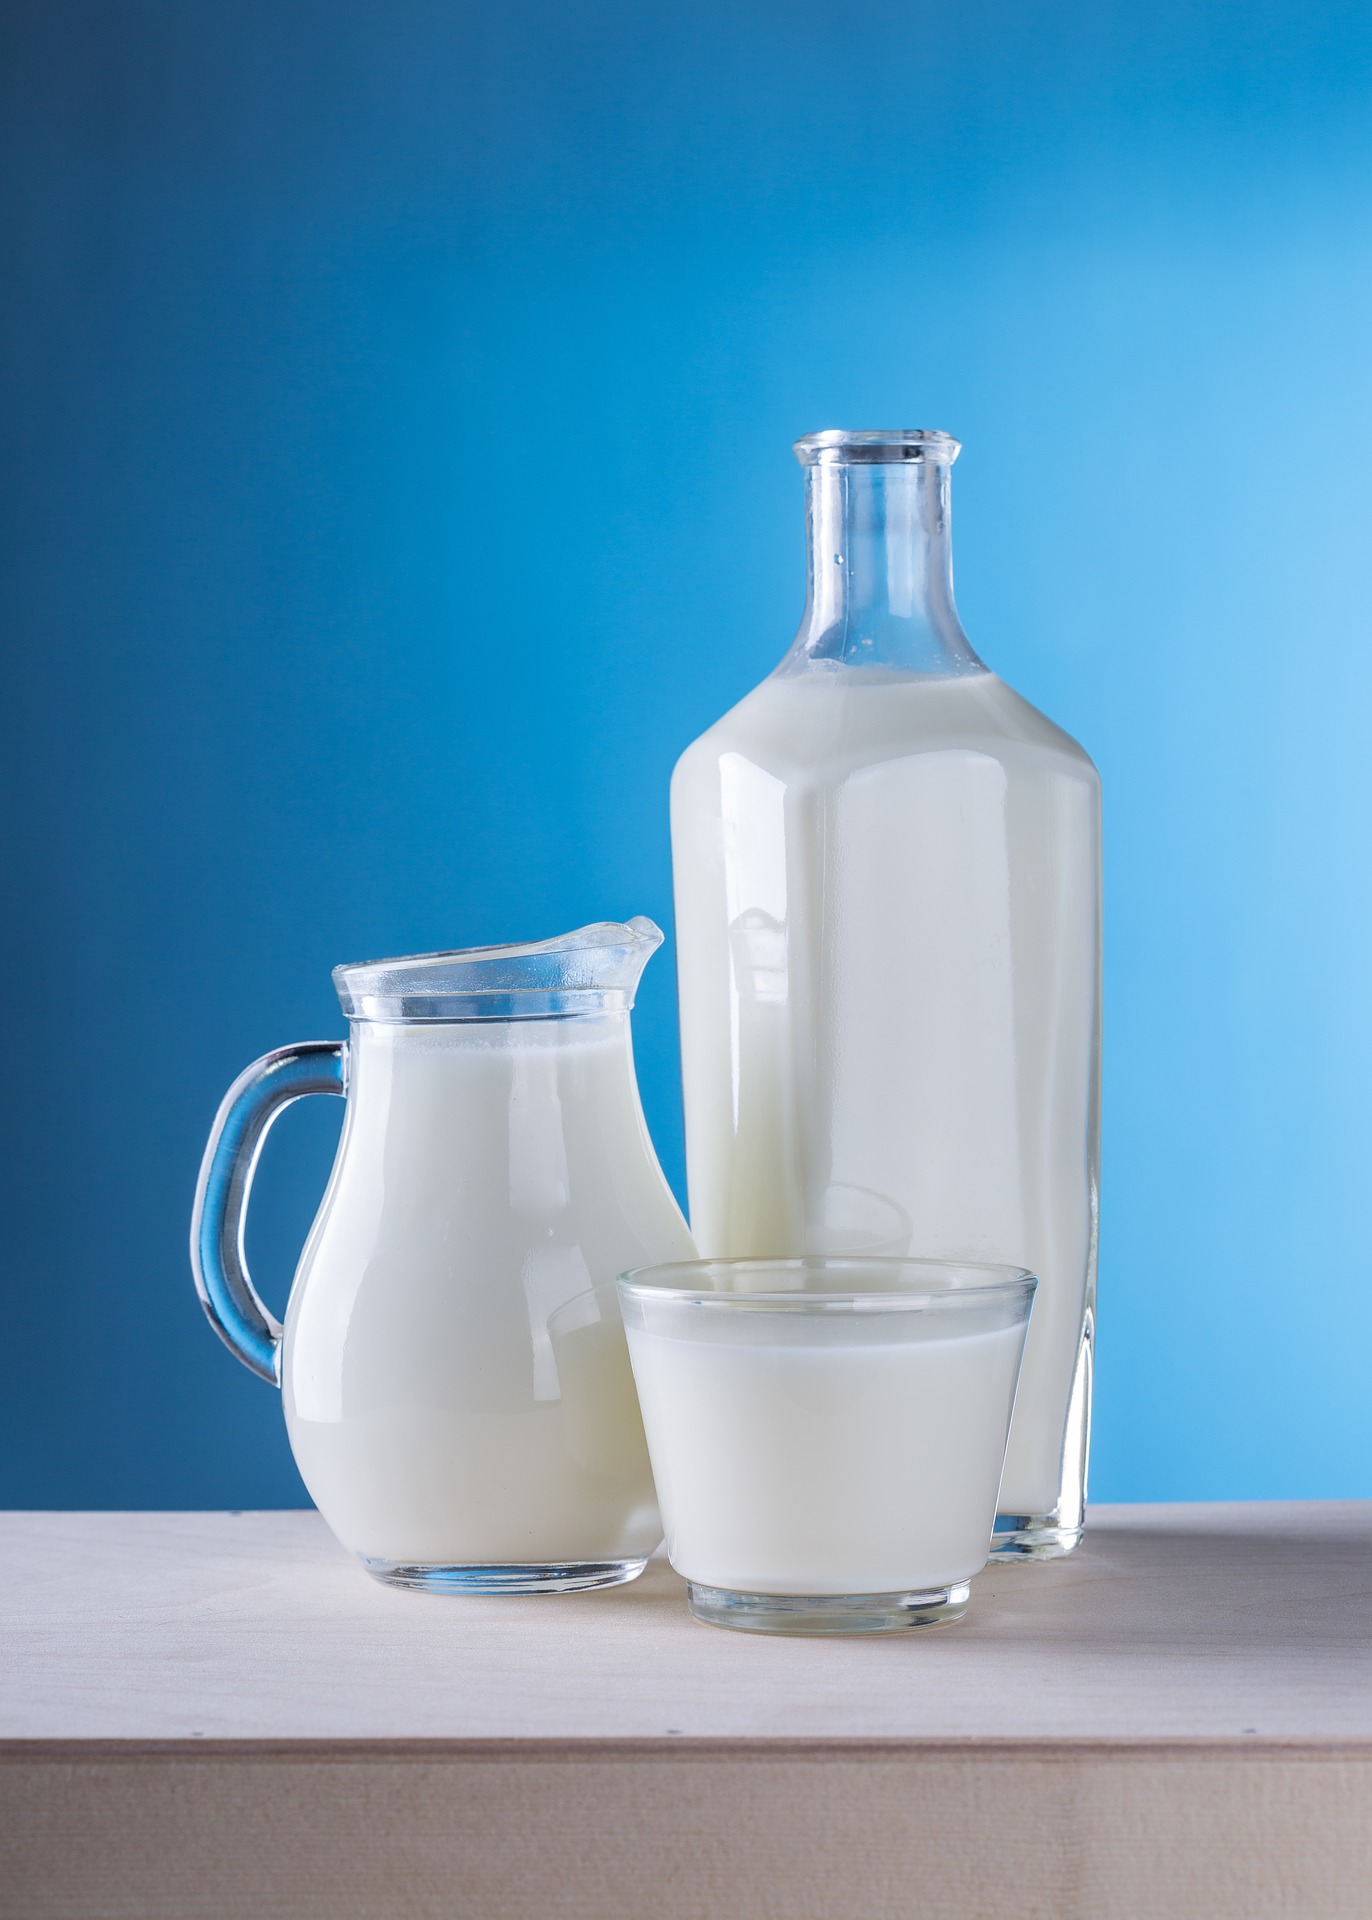 Cena mleka stabilna mimo suszy w Nowej Zelandii